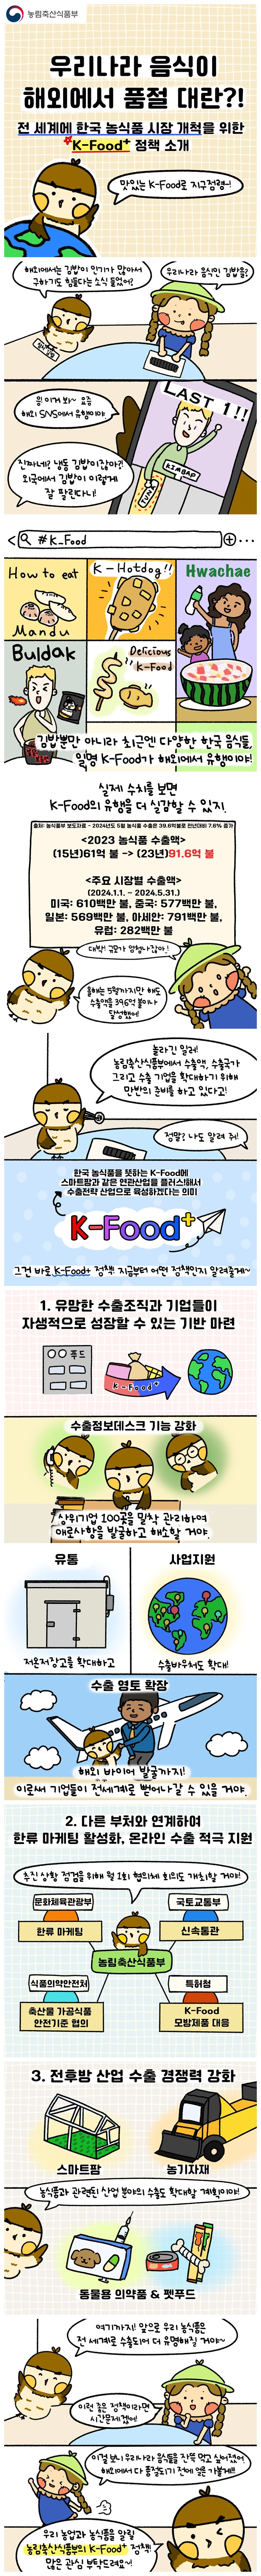 전 세계에 한국 농식품 시장 개척을 위한 K-Food+ 정책